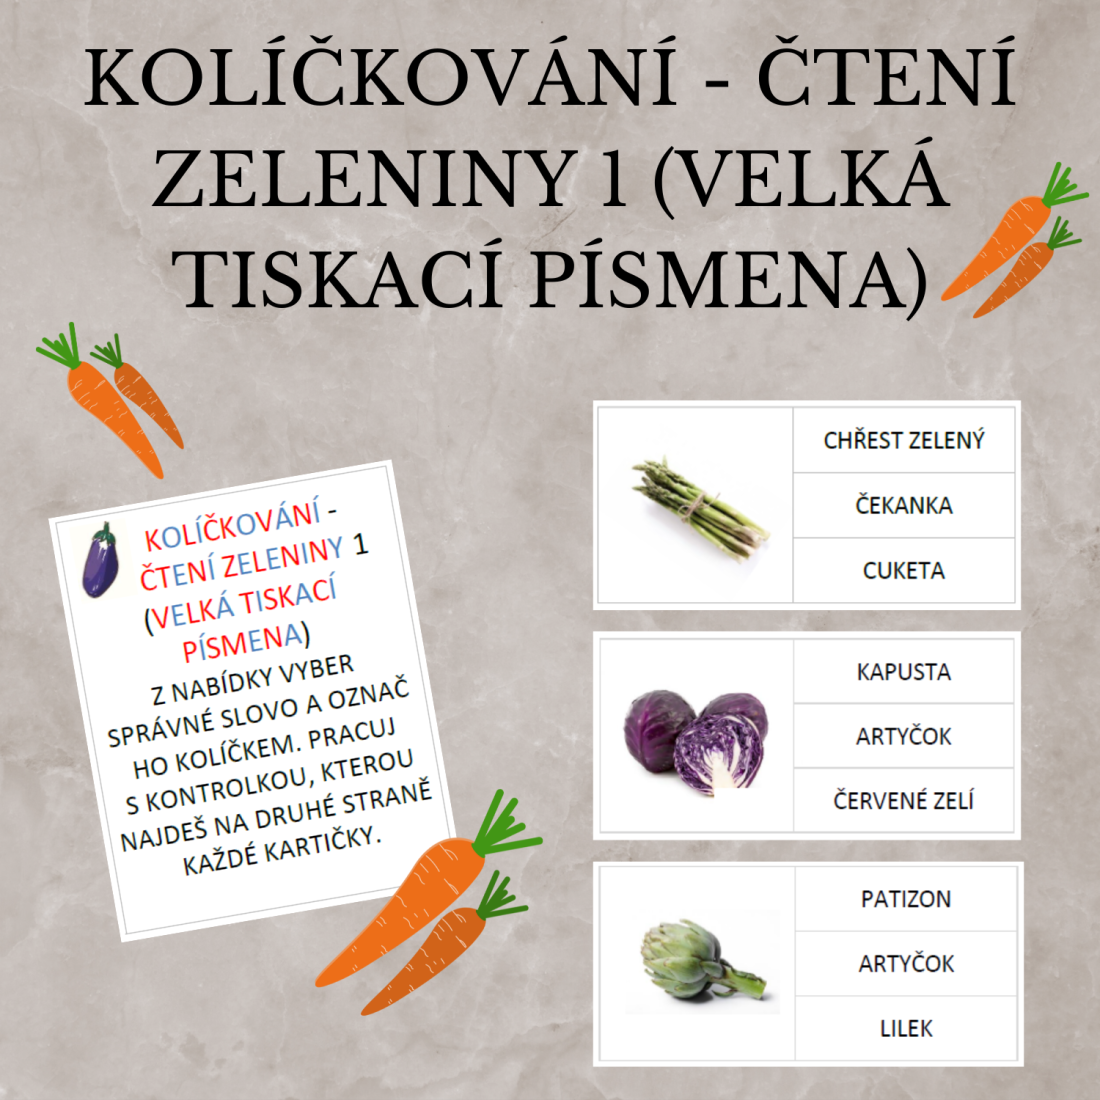 Produkt - Kolíčkování - čtení zeleniny 1 (velká tiskací písmena)